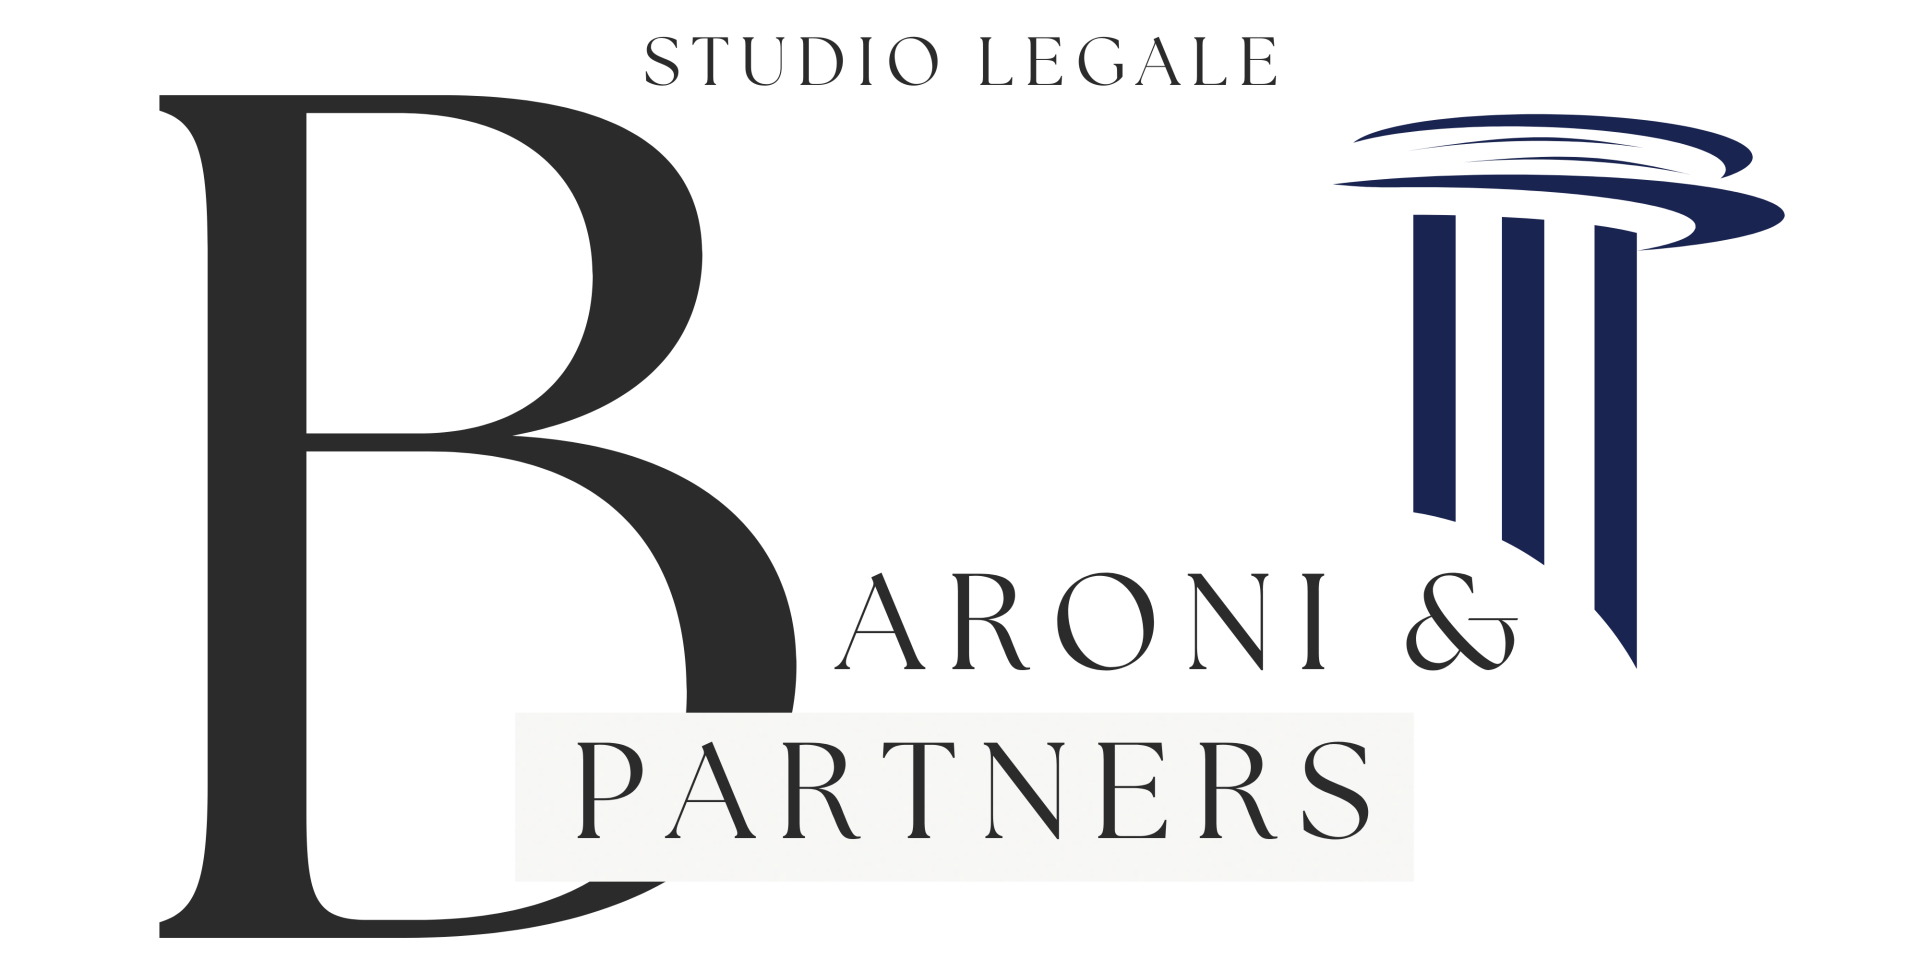 Studio Legale Baroni Reggio Emilia . Avvocato Reggio emilia